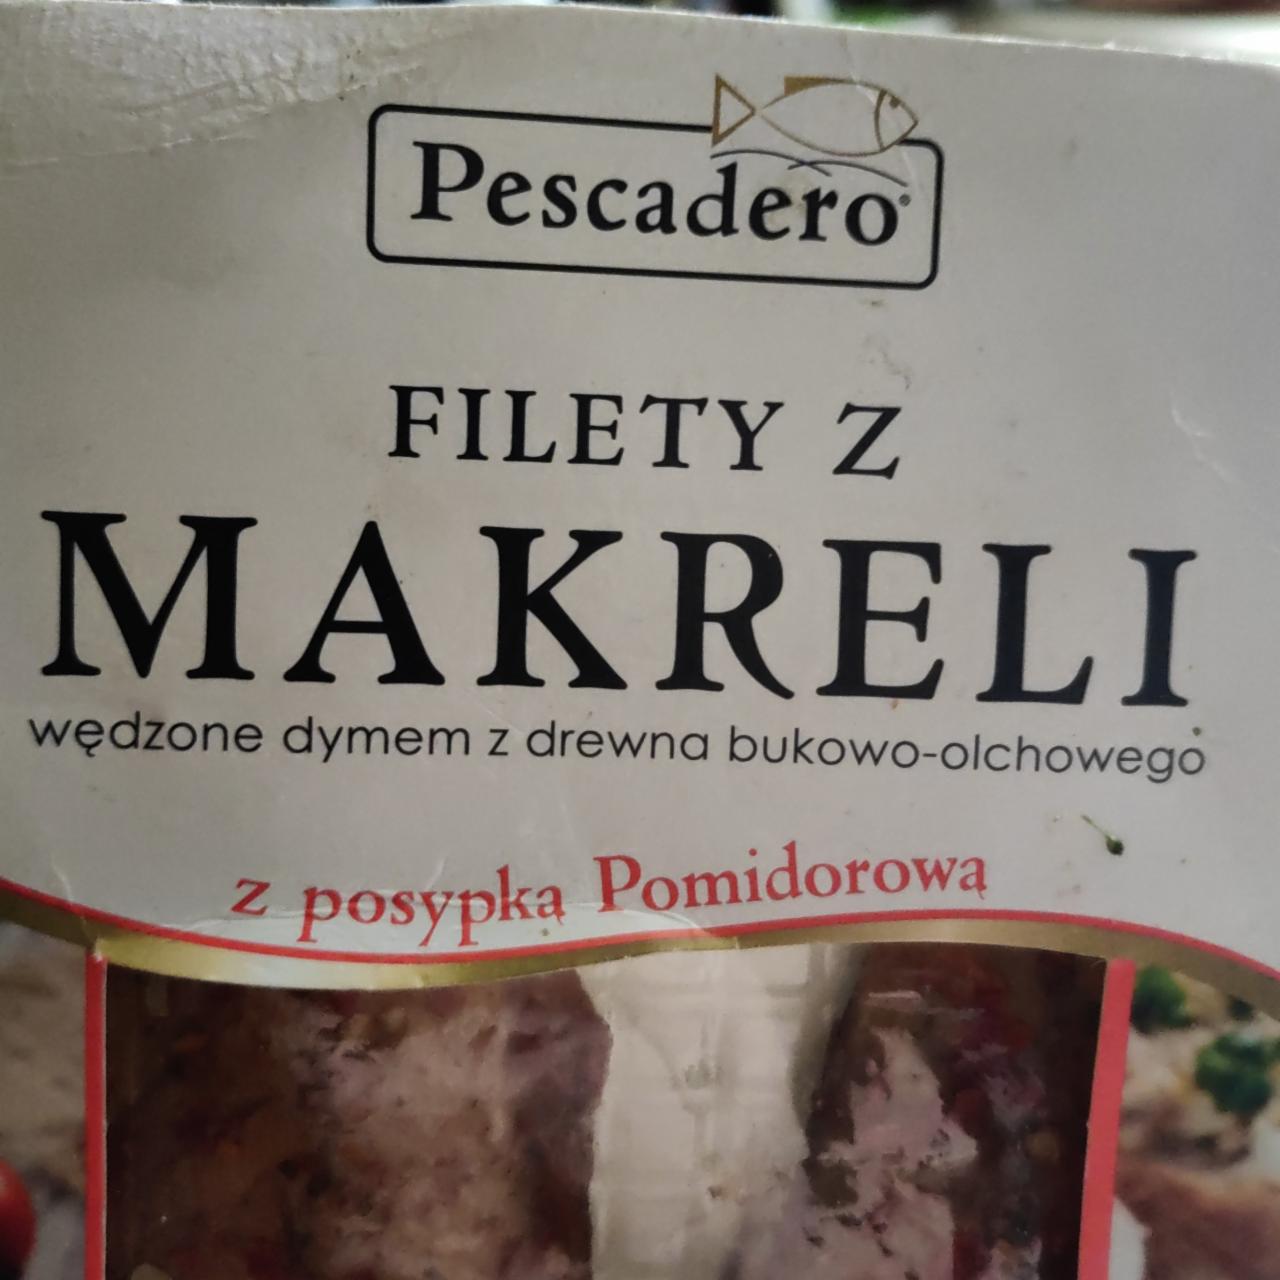 Zdjęcia - Filety z makreli z posypką pomidorowa Pescadero